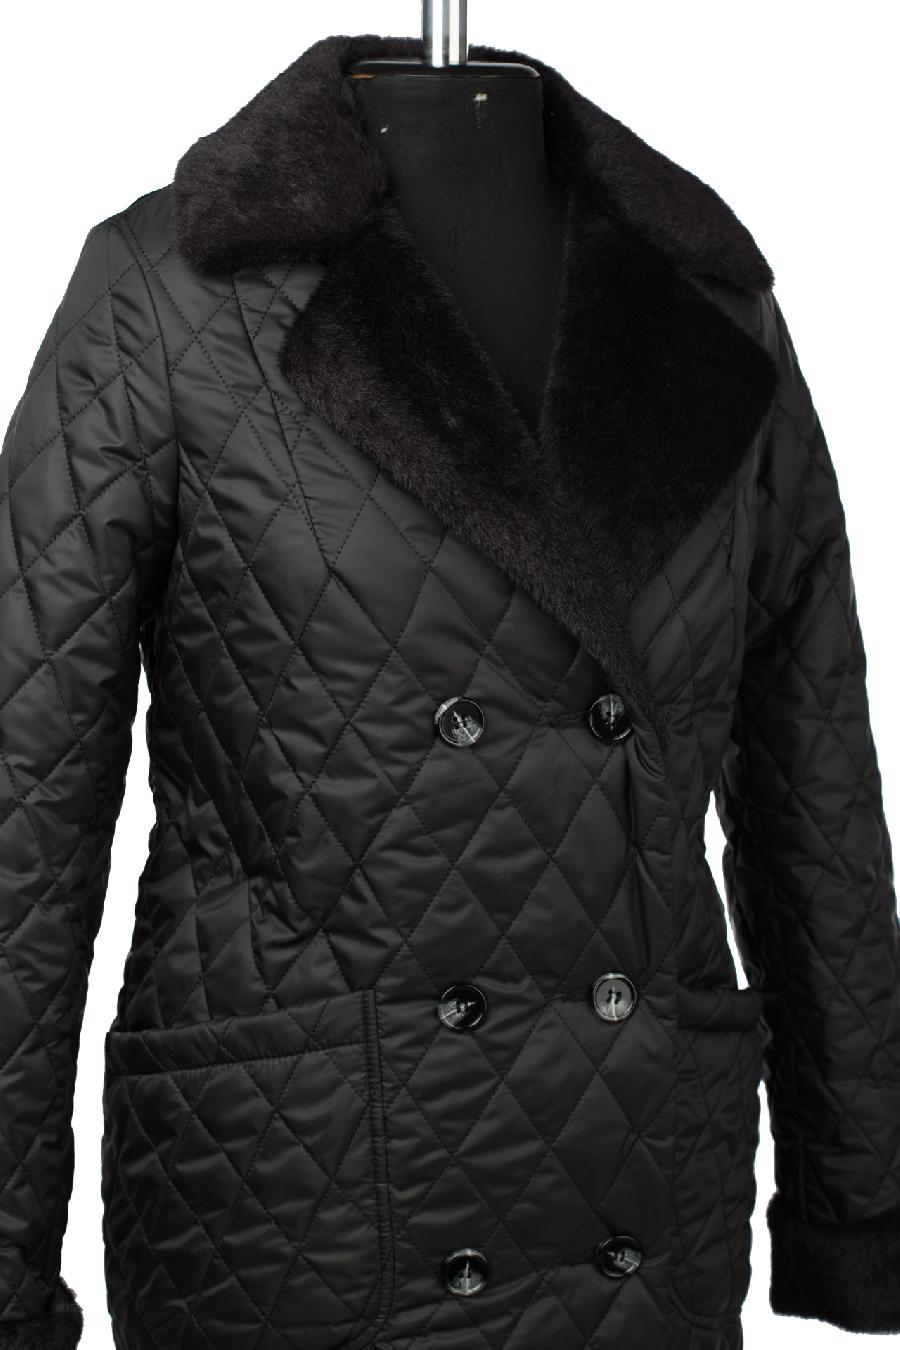 05-2100 Куртка женская зимняя (пояс) Плащевка черный